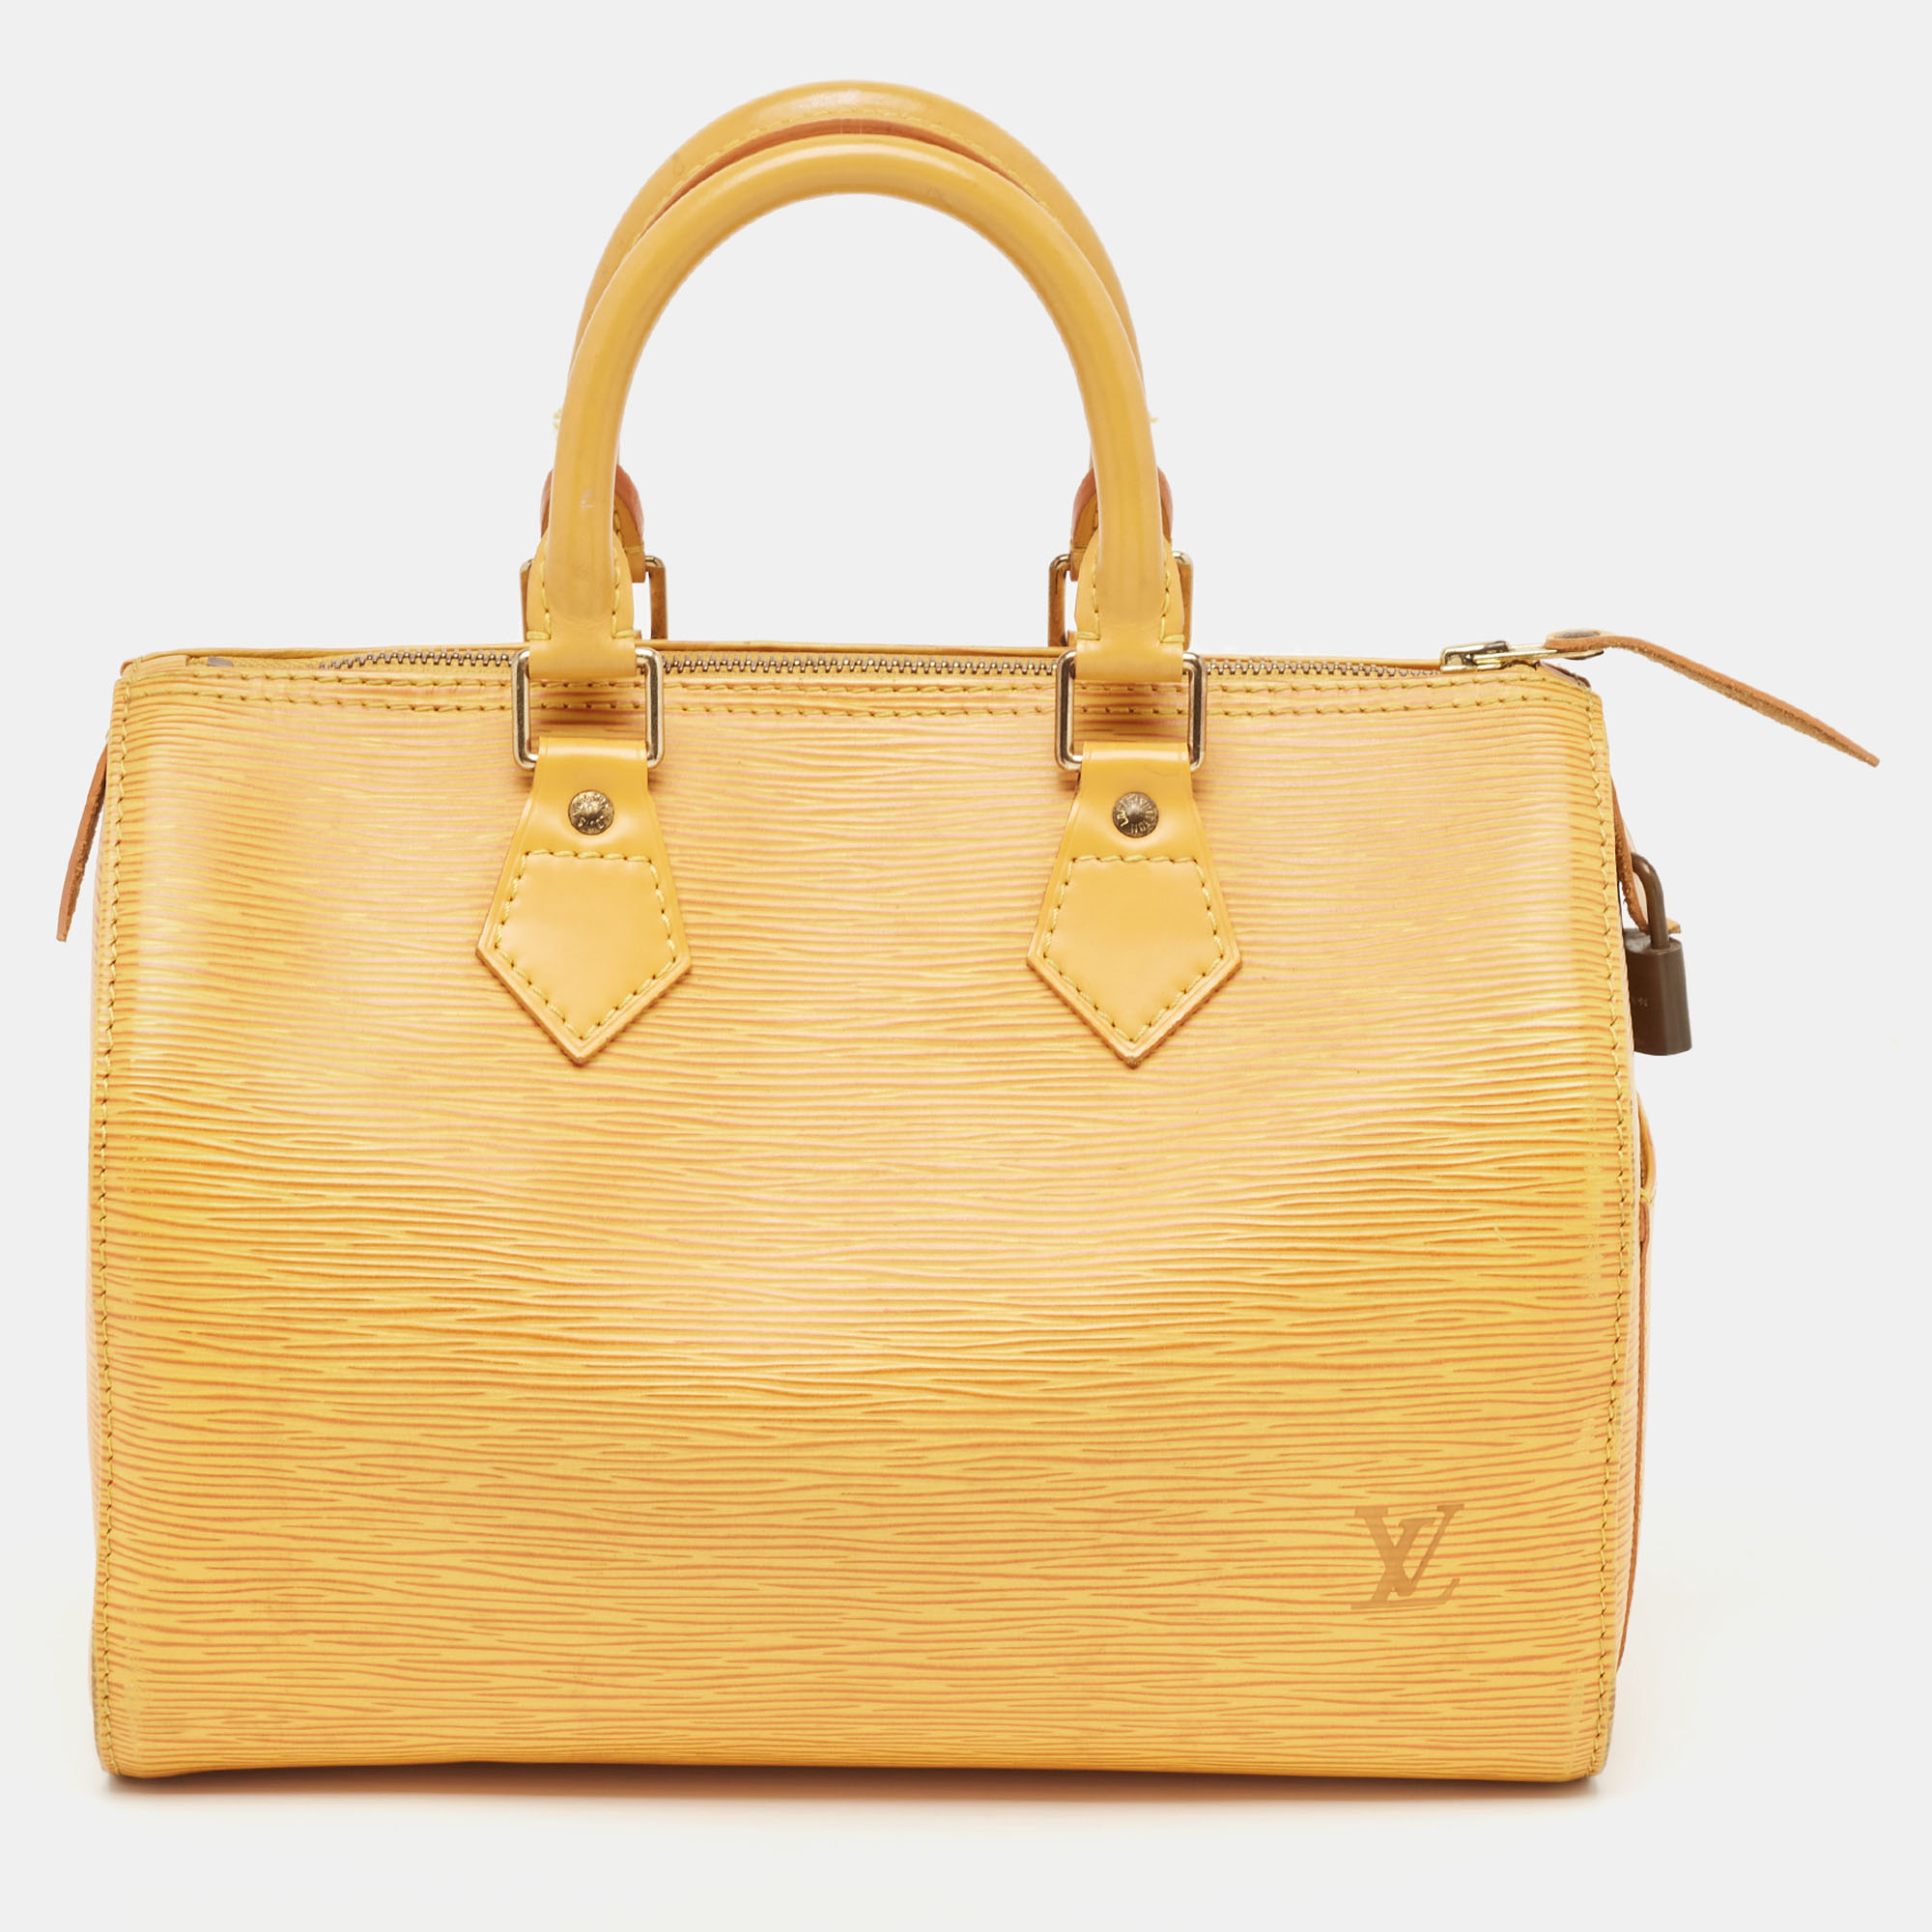 Louis vuitton tassil yellow epi leather speedy 25 bag